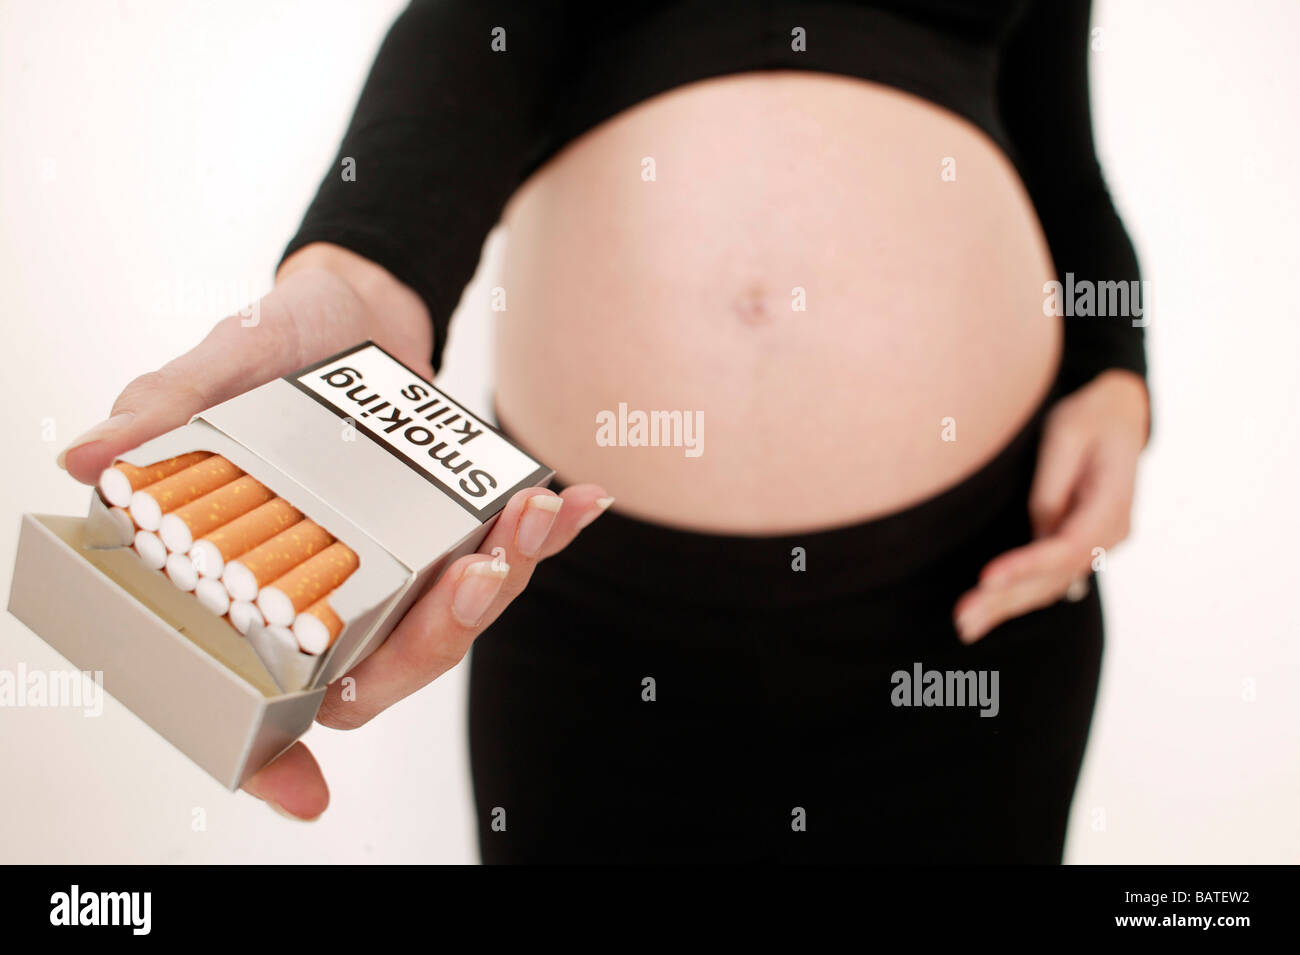 Как бросить курить при беременности на ранних